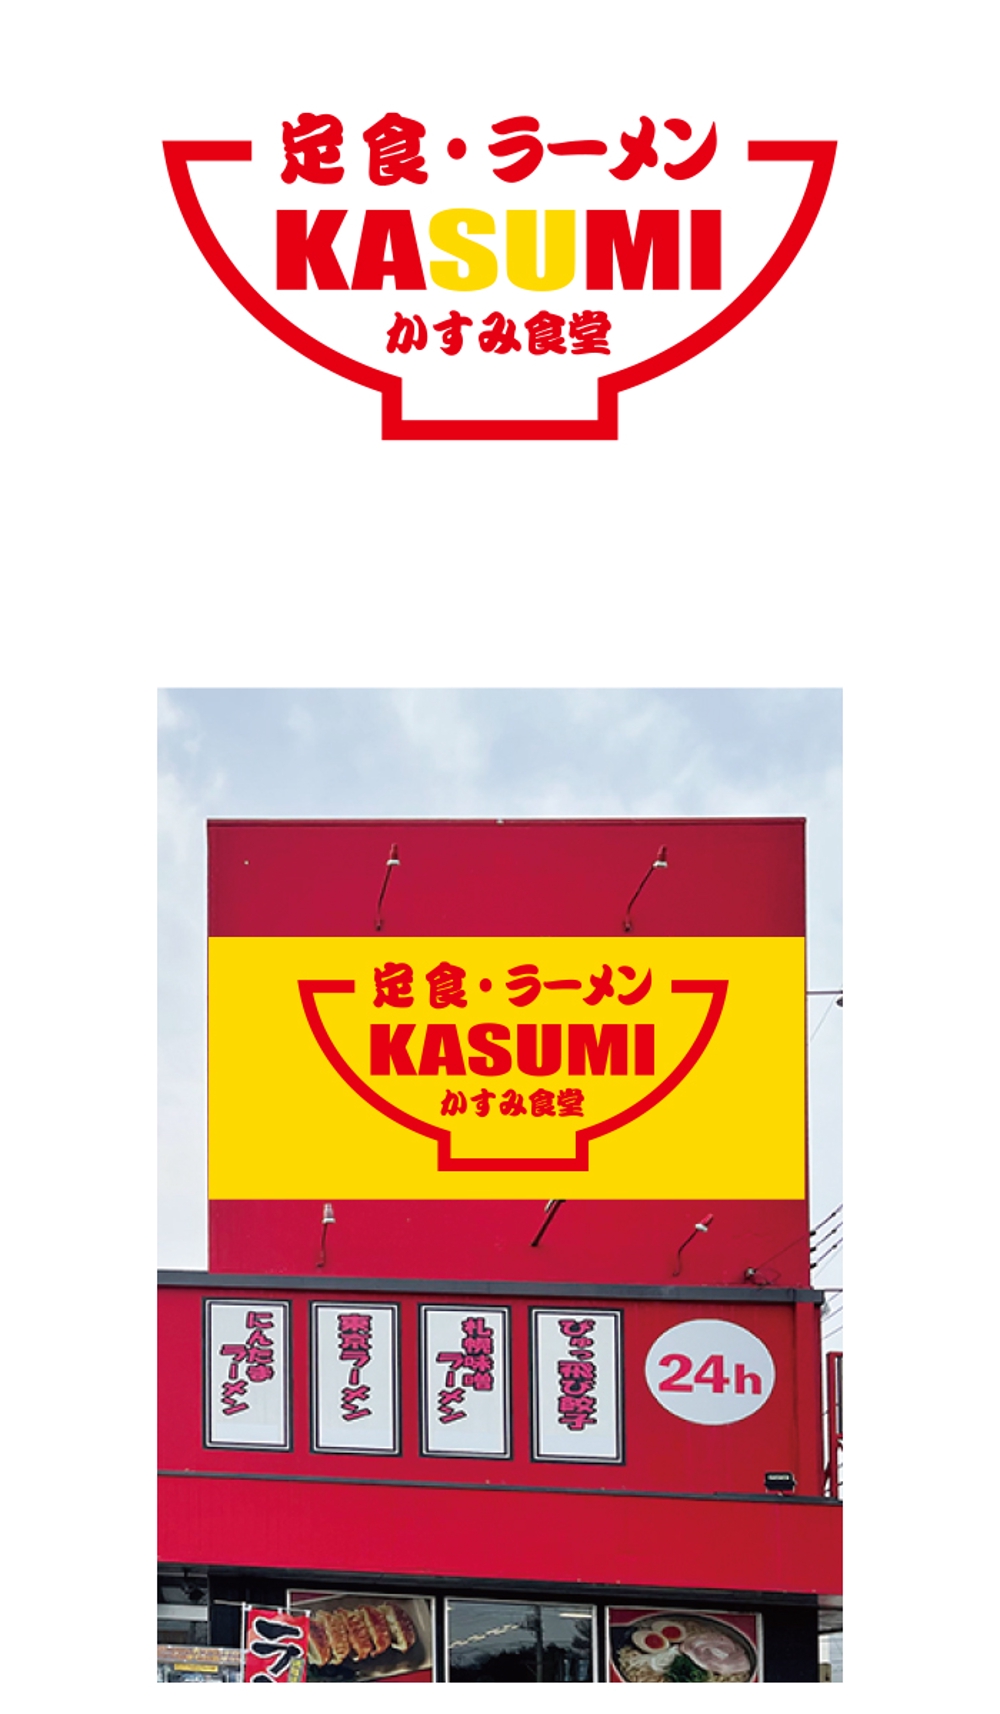 かすみ食堂 logo_serve.jpg